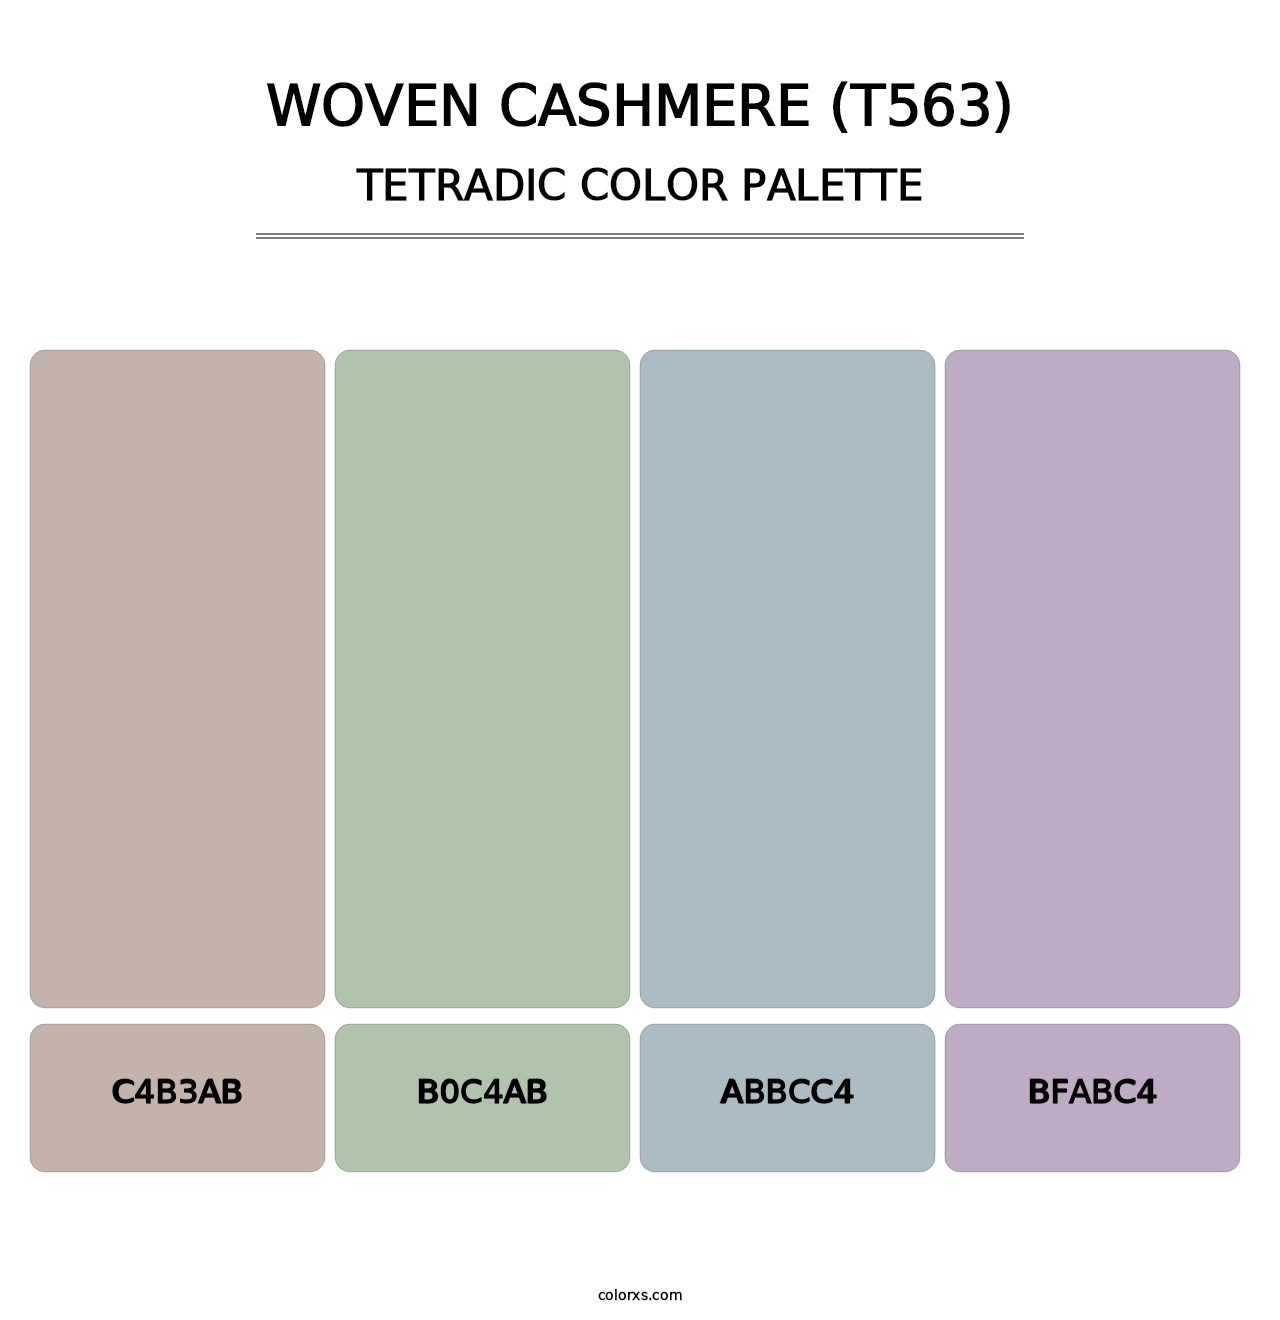 Woven Cashmere (T563) - Tetradic Color Palette